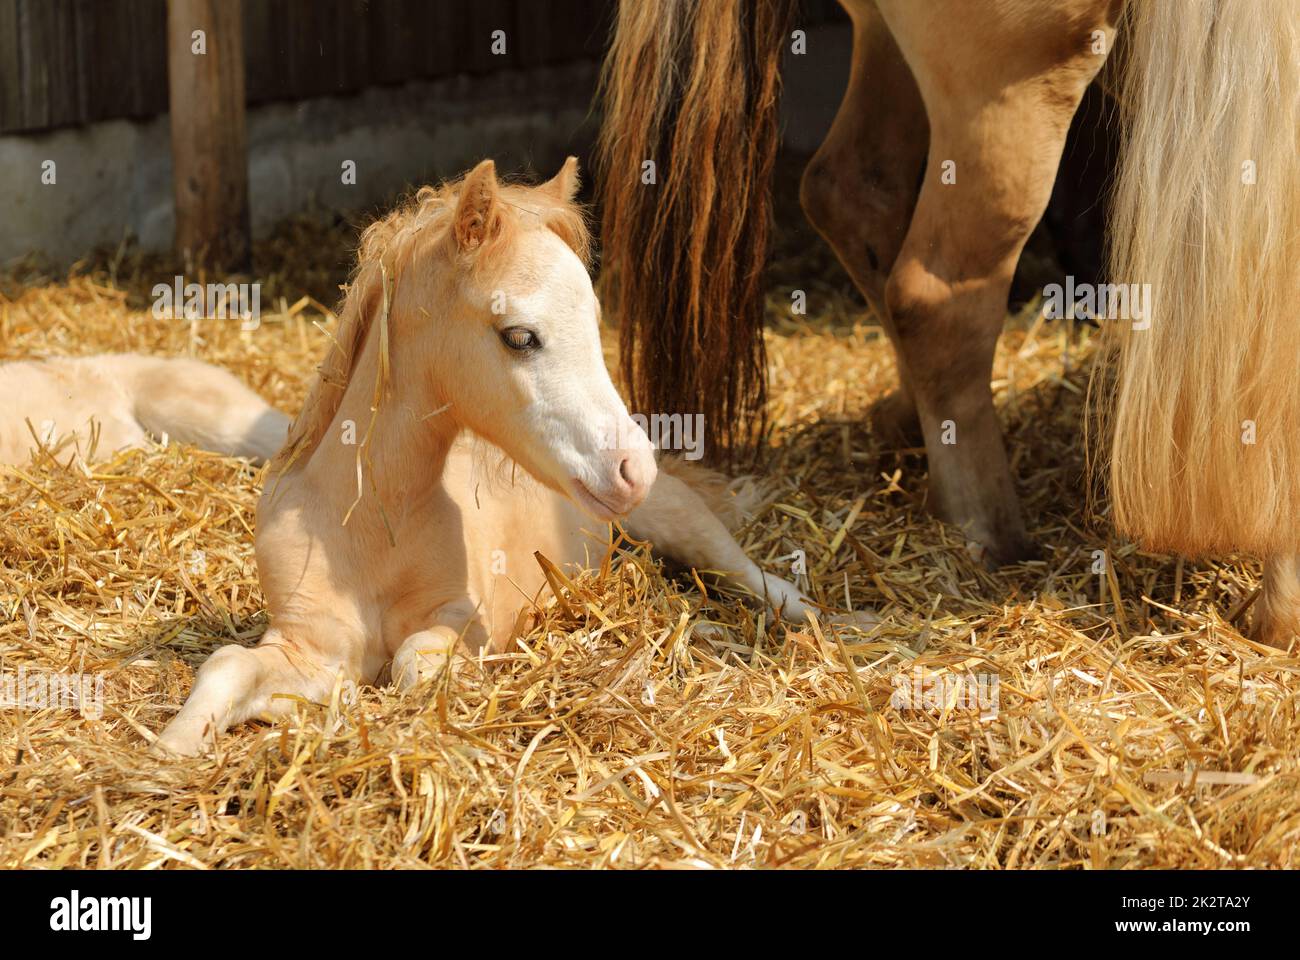 il cavallo del bambino si sdraia nella paglia nella fattoria, cute vista animale Foto Stock